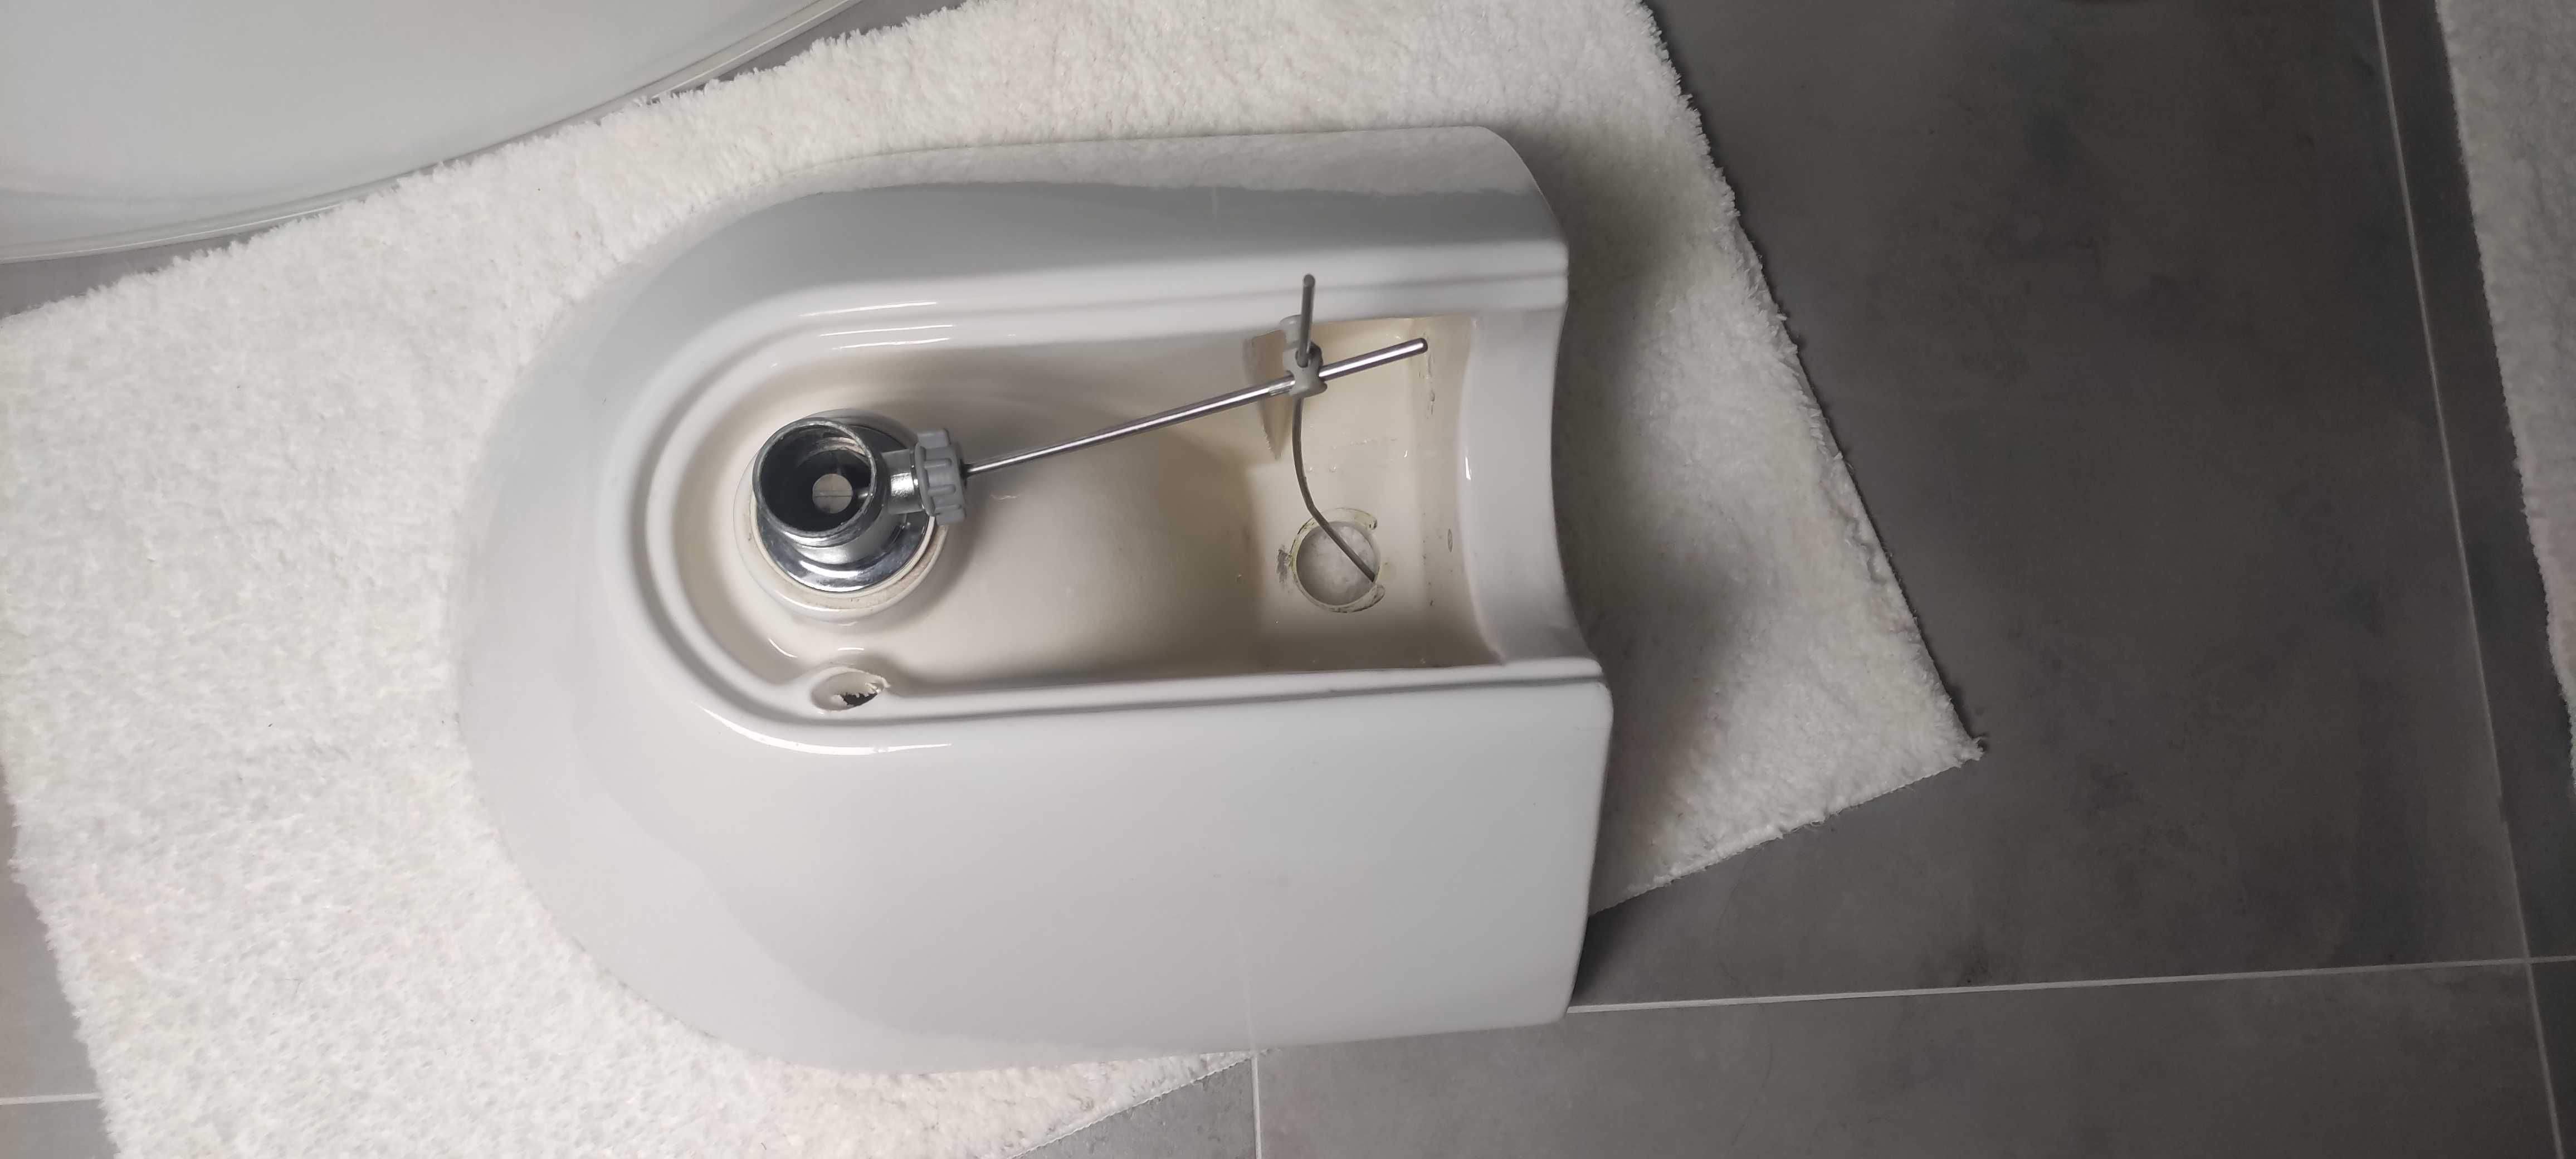 Umywalka ceramiczna mała używana do łazienki